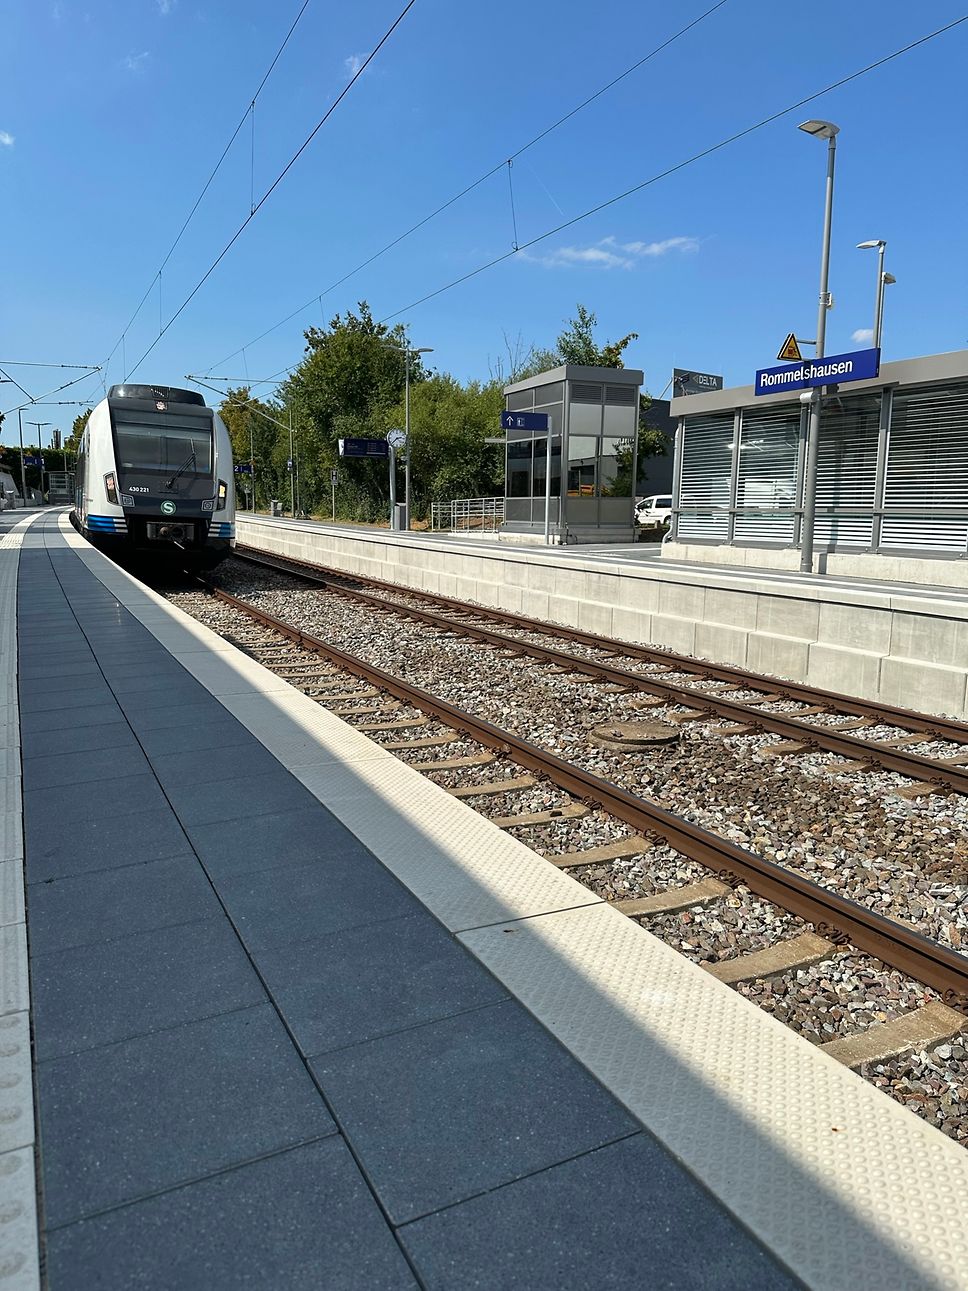 Blick auf Gleis 2 in Rommelshausen mit einfahrender S-Bahn